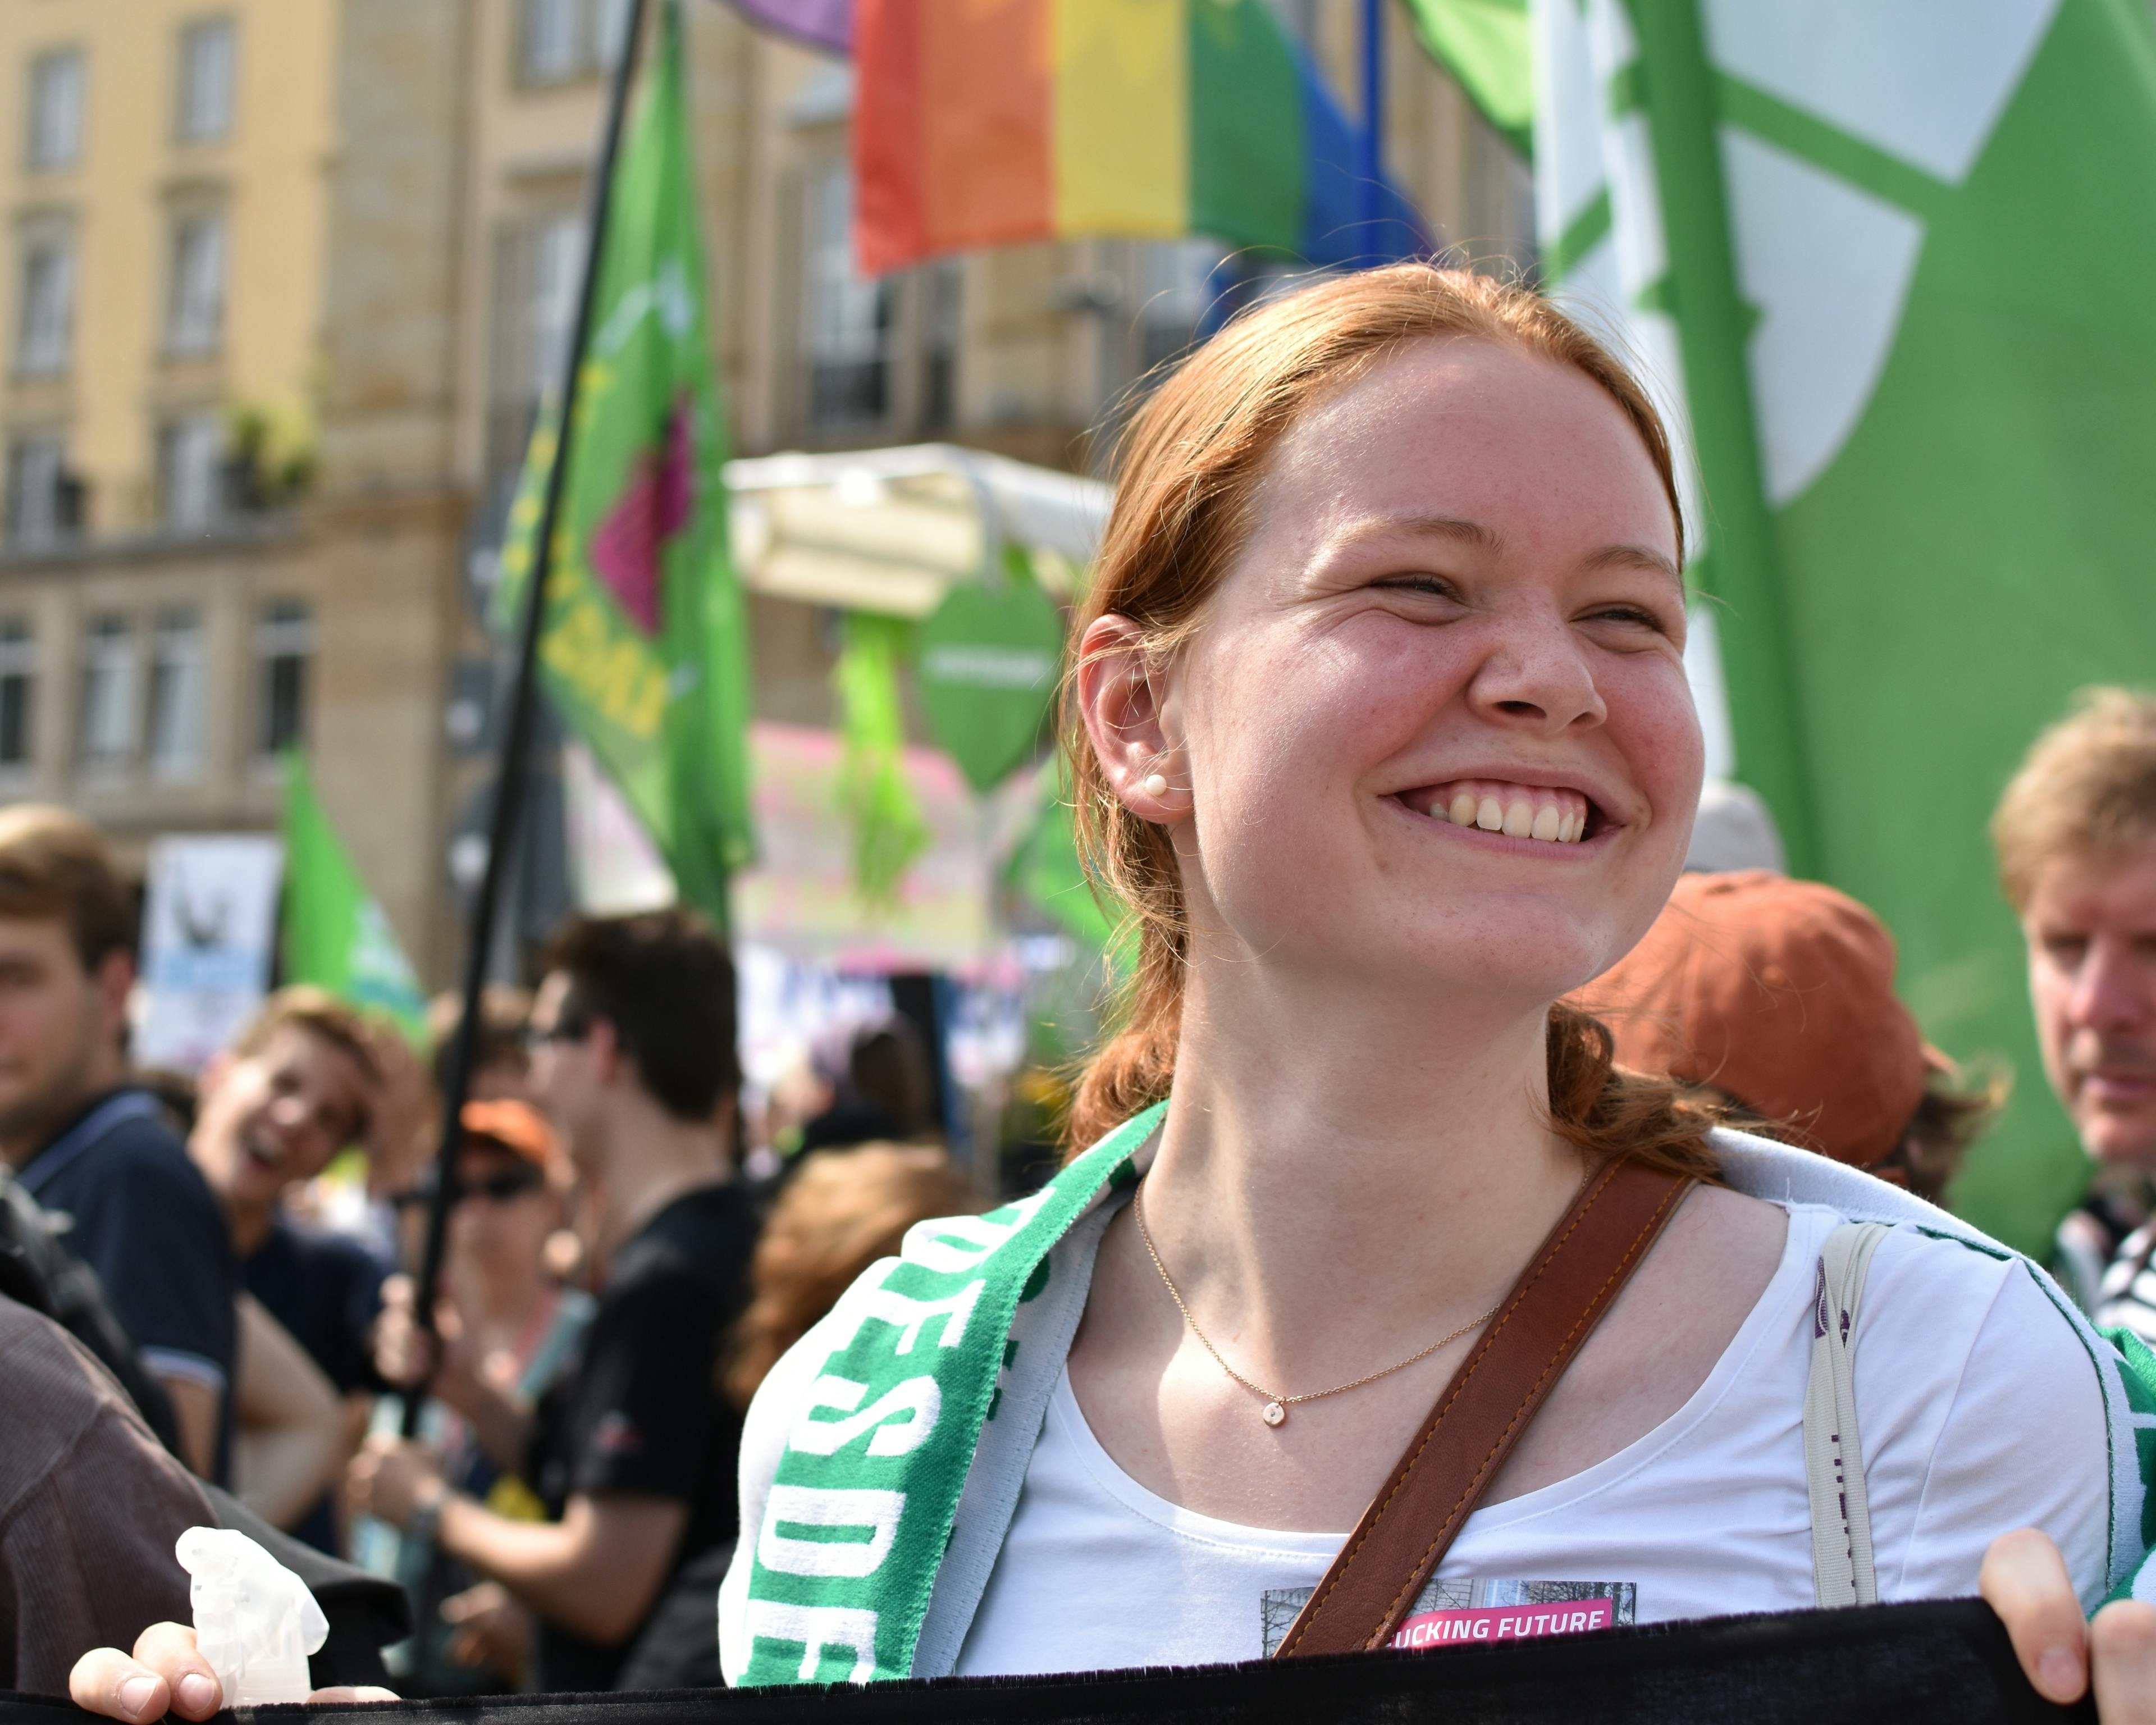 Eine junge Frau hält auf einer Demo ein Banner und strahlt. Im Hintergrund sind viele grüne und bunte Fahnen zu sehen.